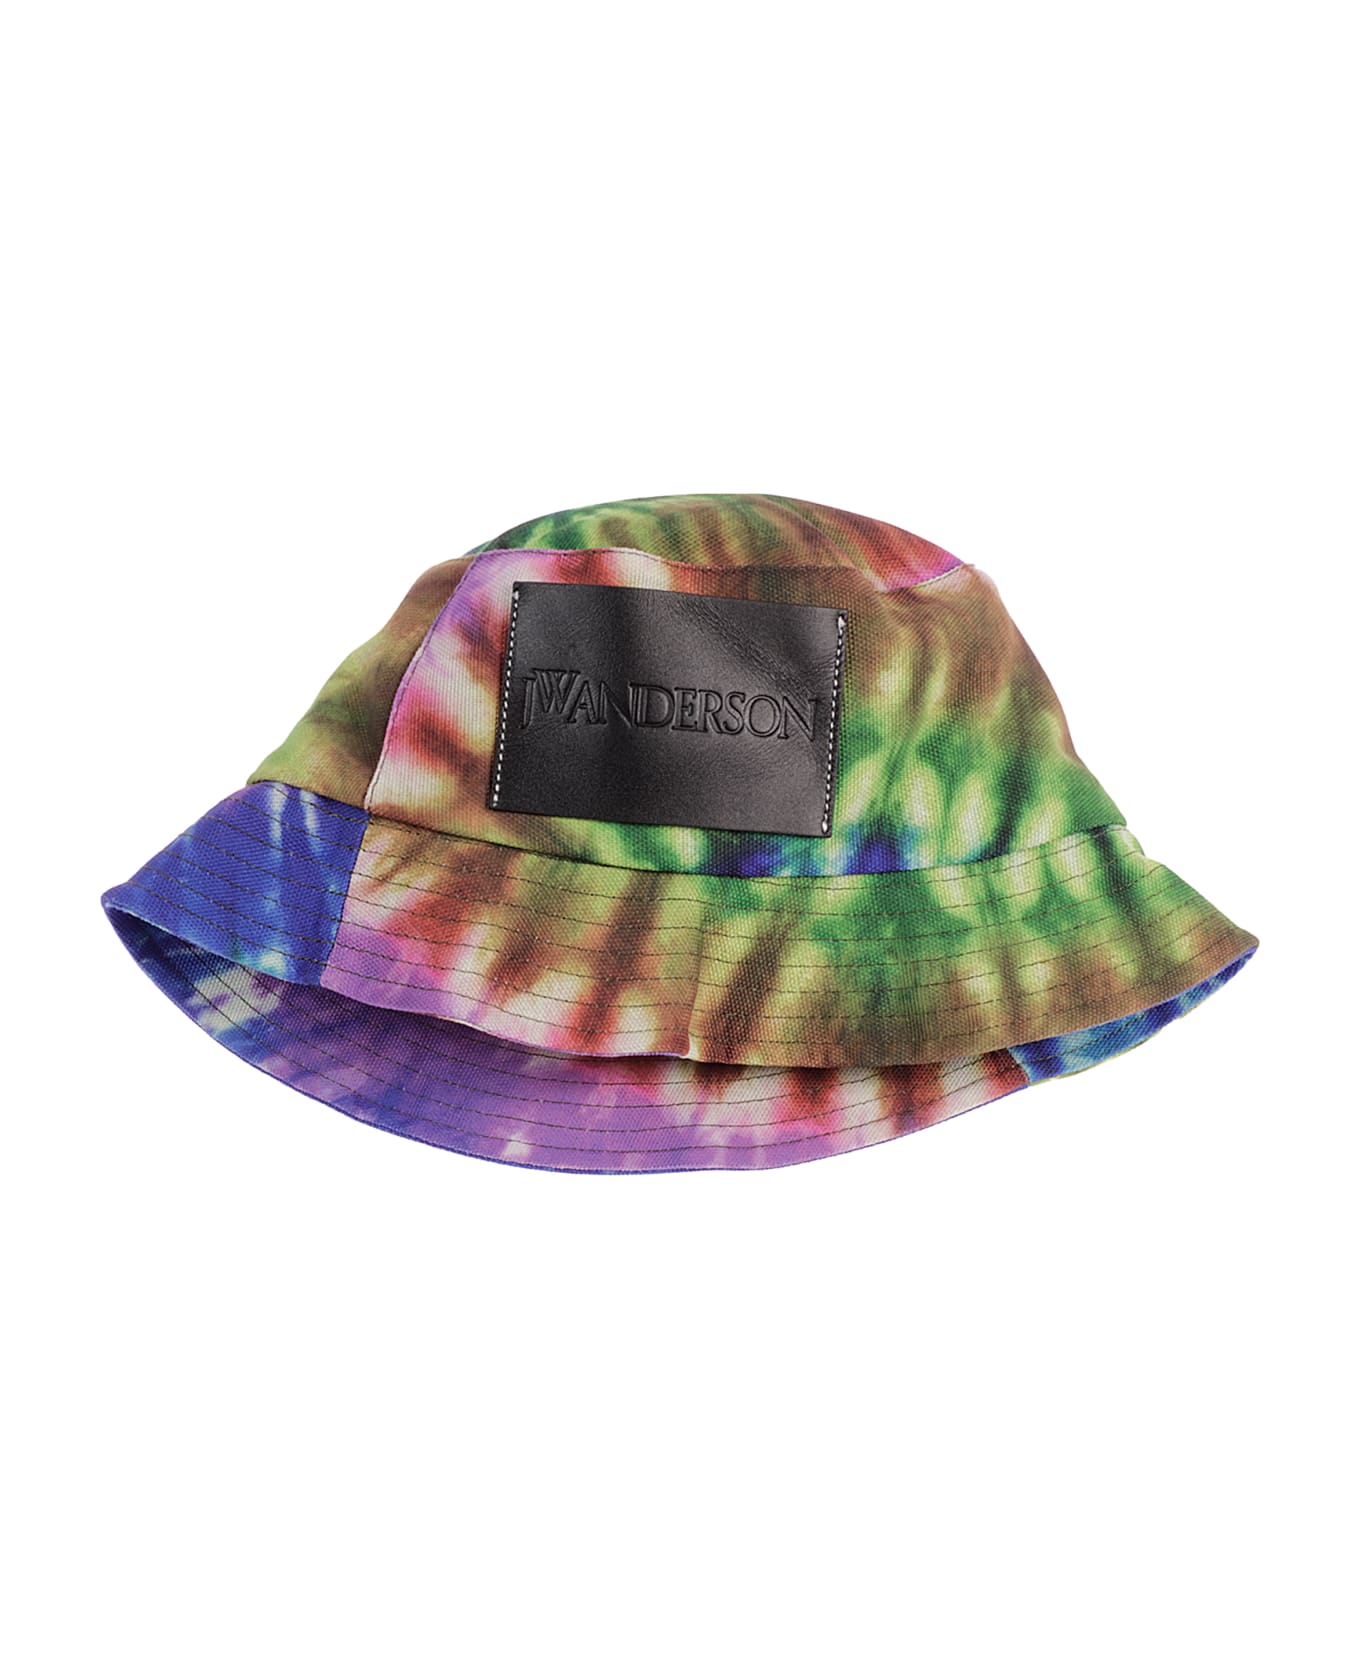 J.W. Anderson Bucket Hat - Multicolor